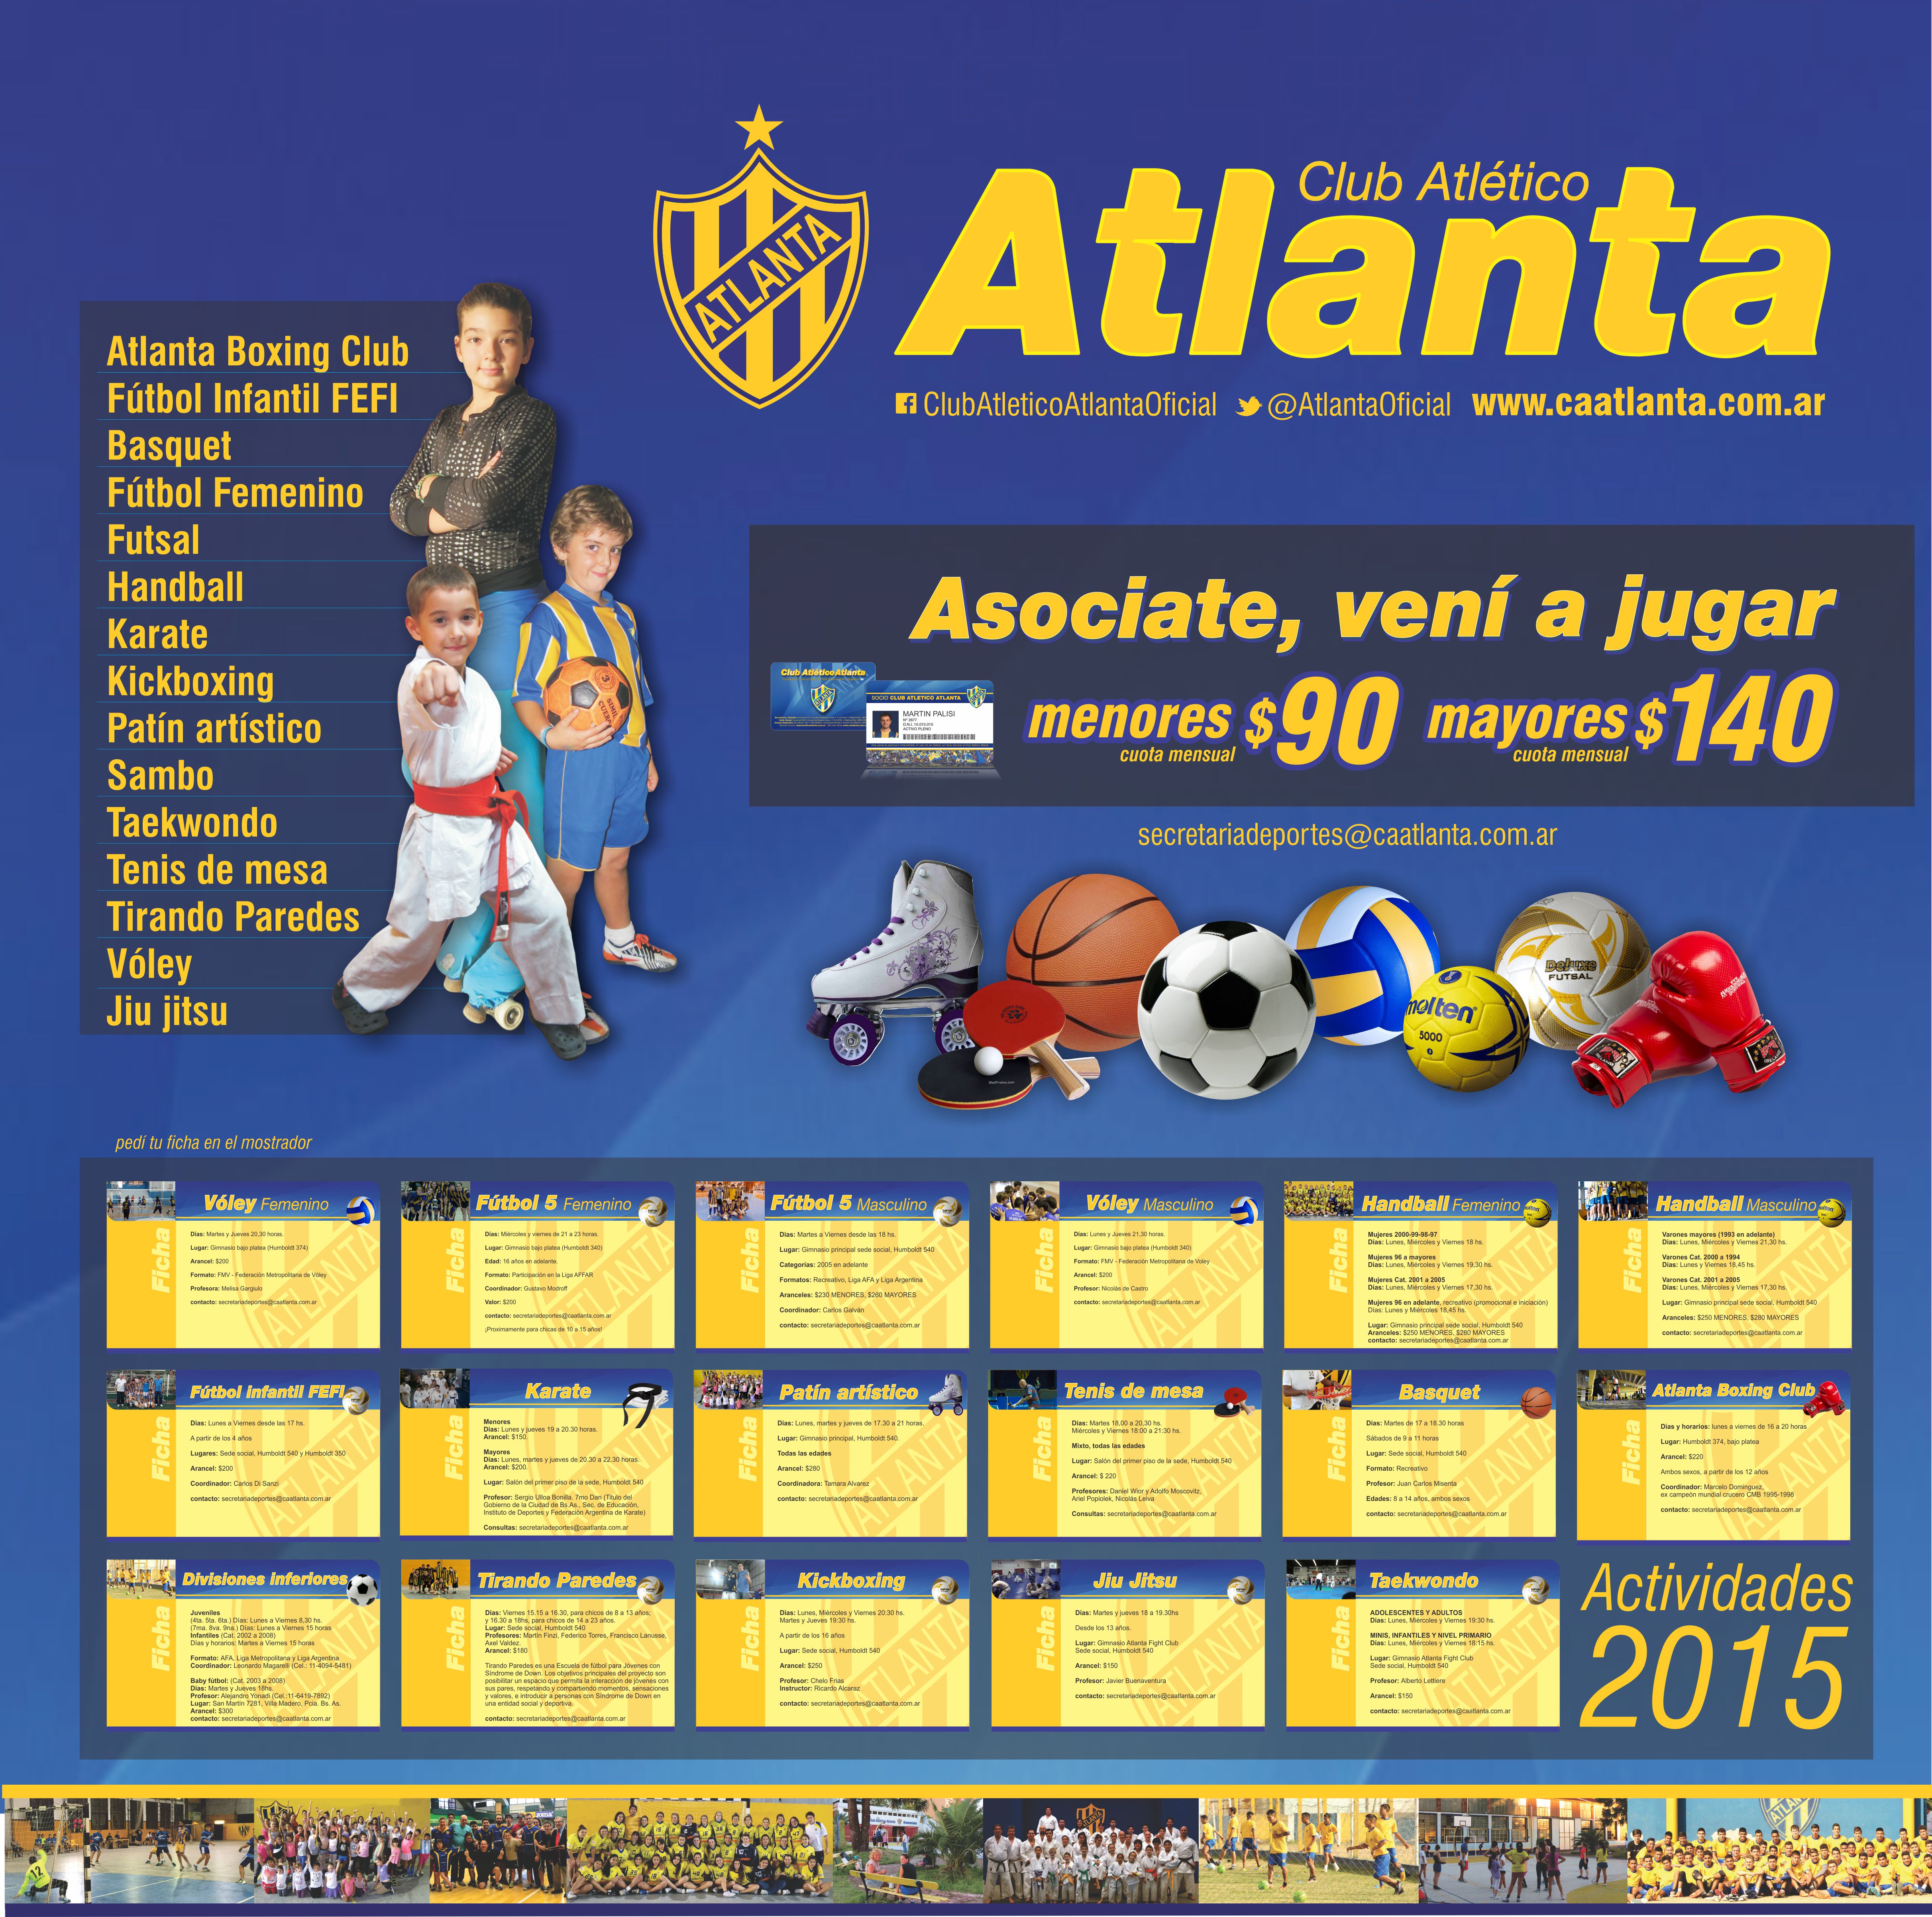 Club Atlético Atlanta: vida social y trabajo de la subcomisión de